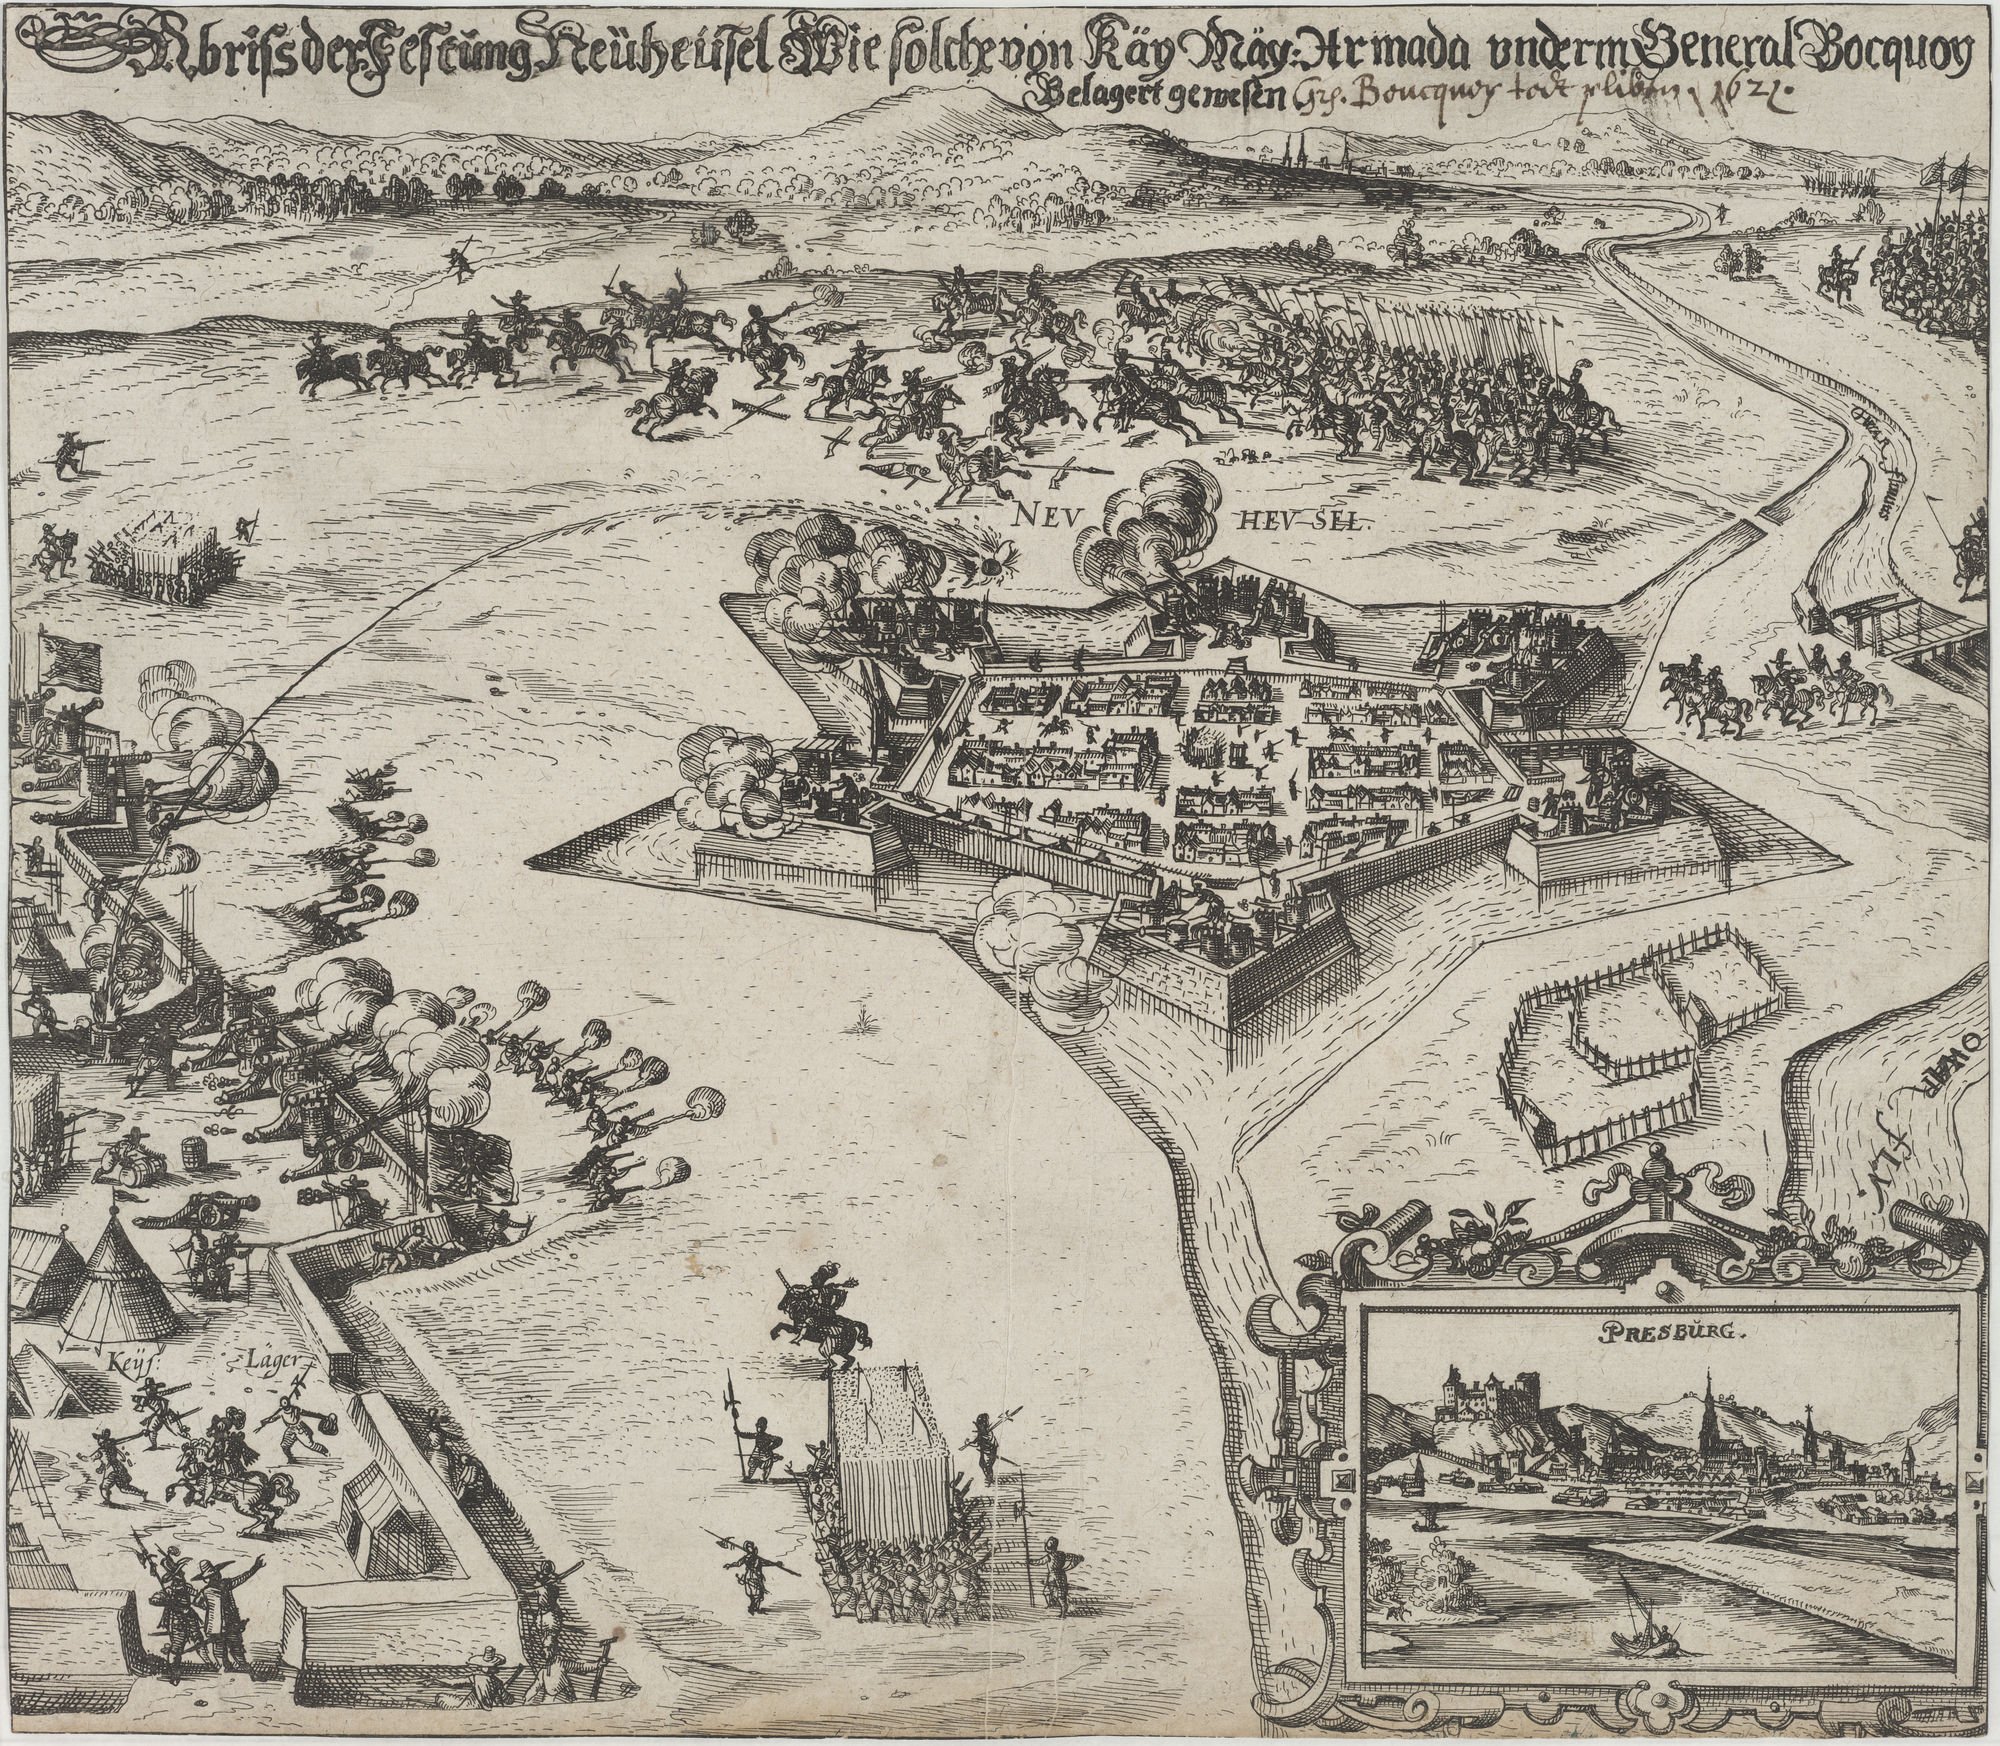 Abriss der Festung Neüheusel Wie solche von Käy Mäy: Armada underm General Bocquoy/ Belagert gewesen (Kulturstiftung Sachsen-Anhalt Public Domain Mark)